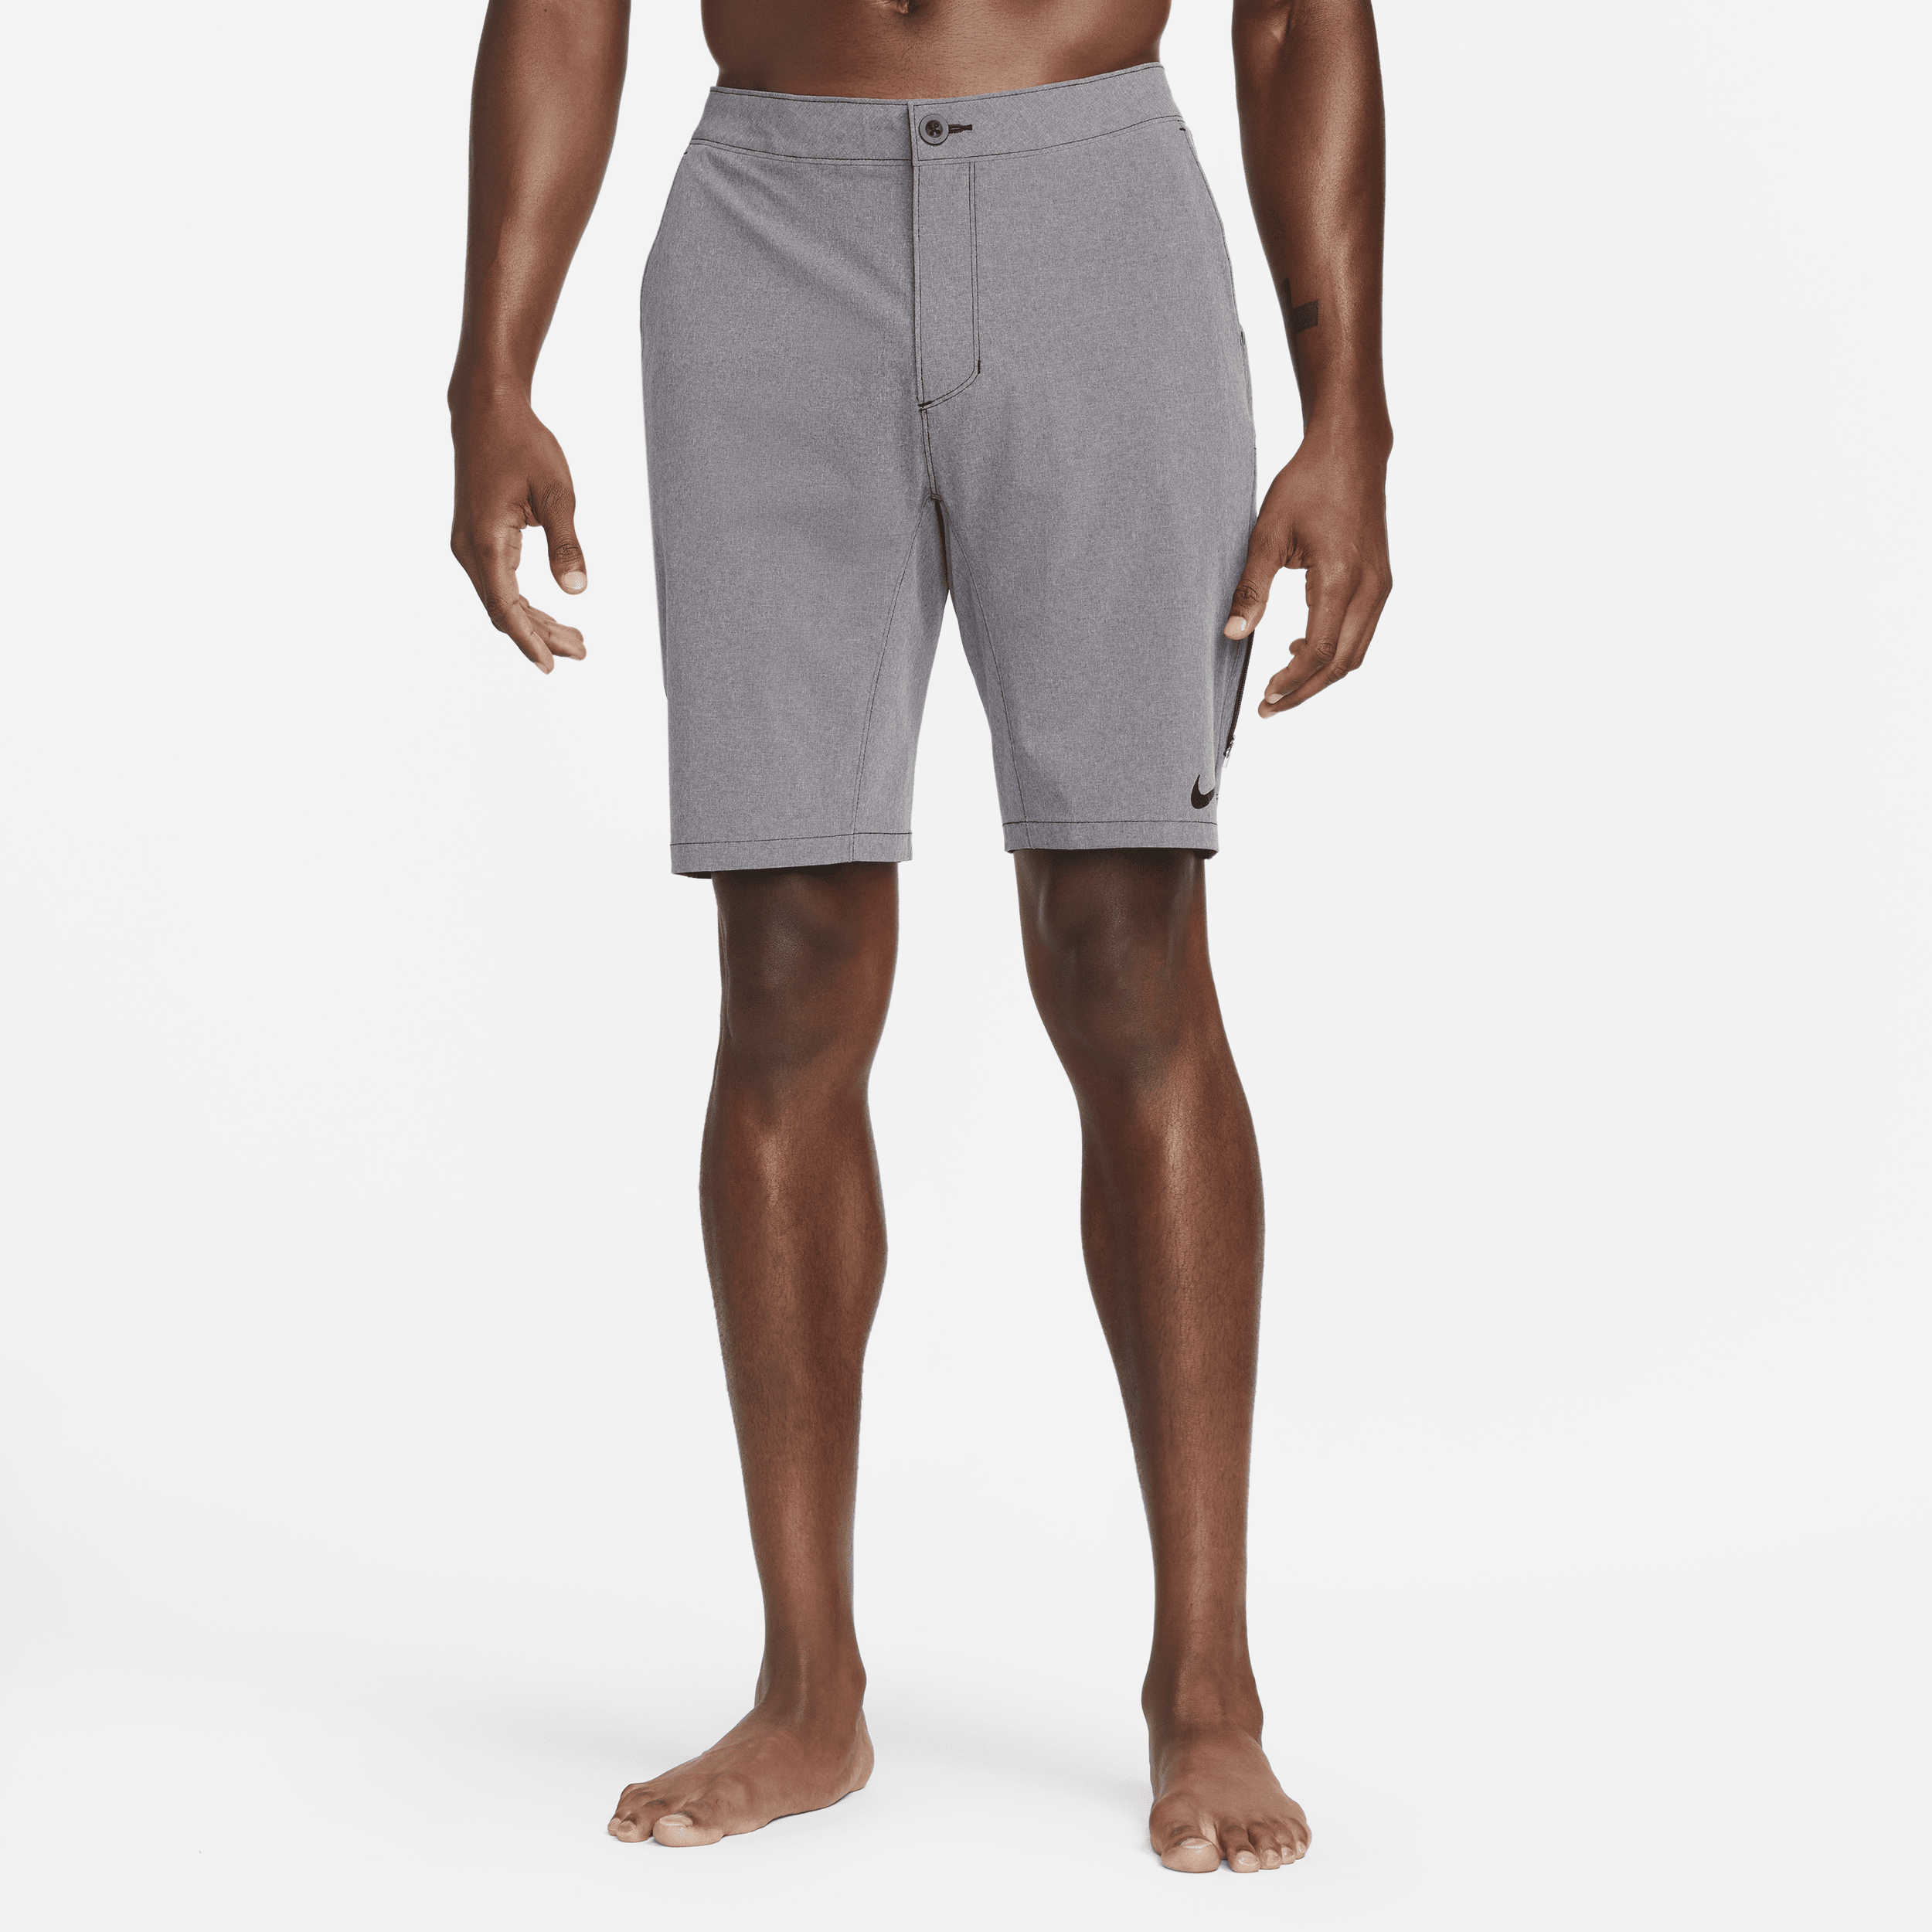 Shorts ibridi da mare 23 cm Nike Flow – Uomo - Grigio